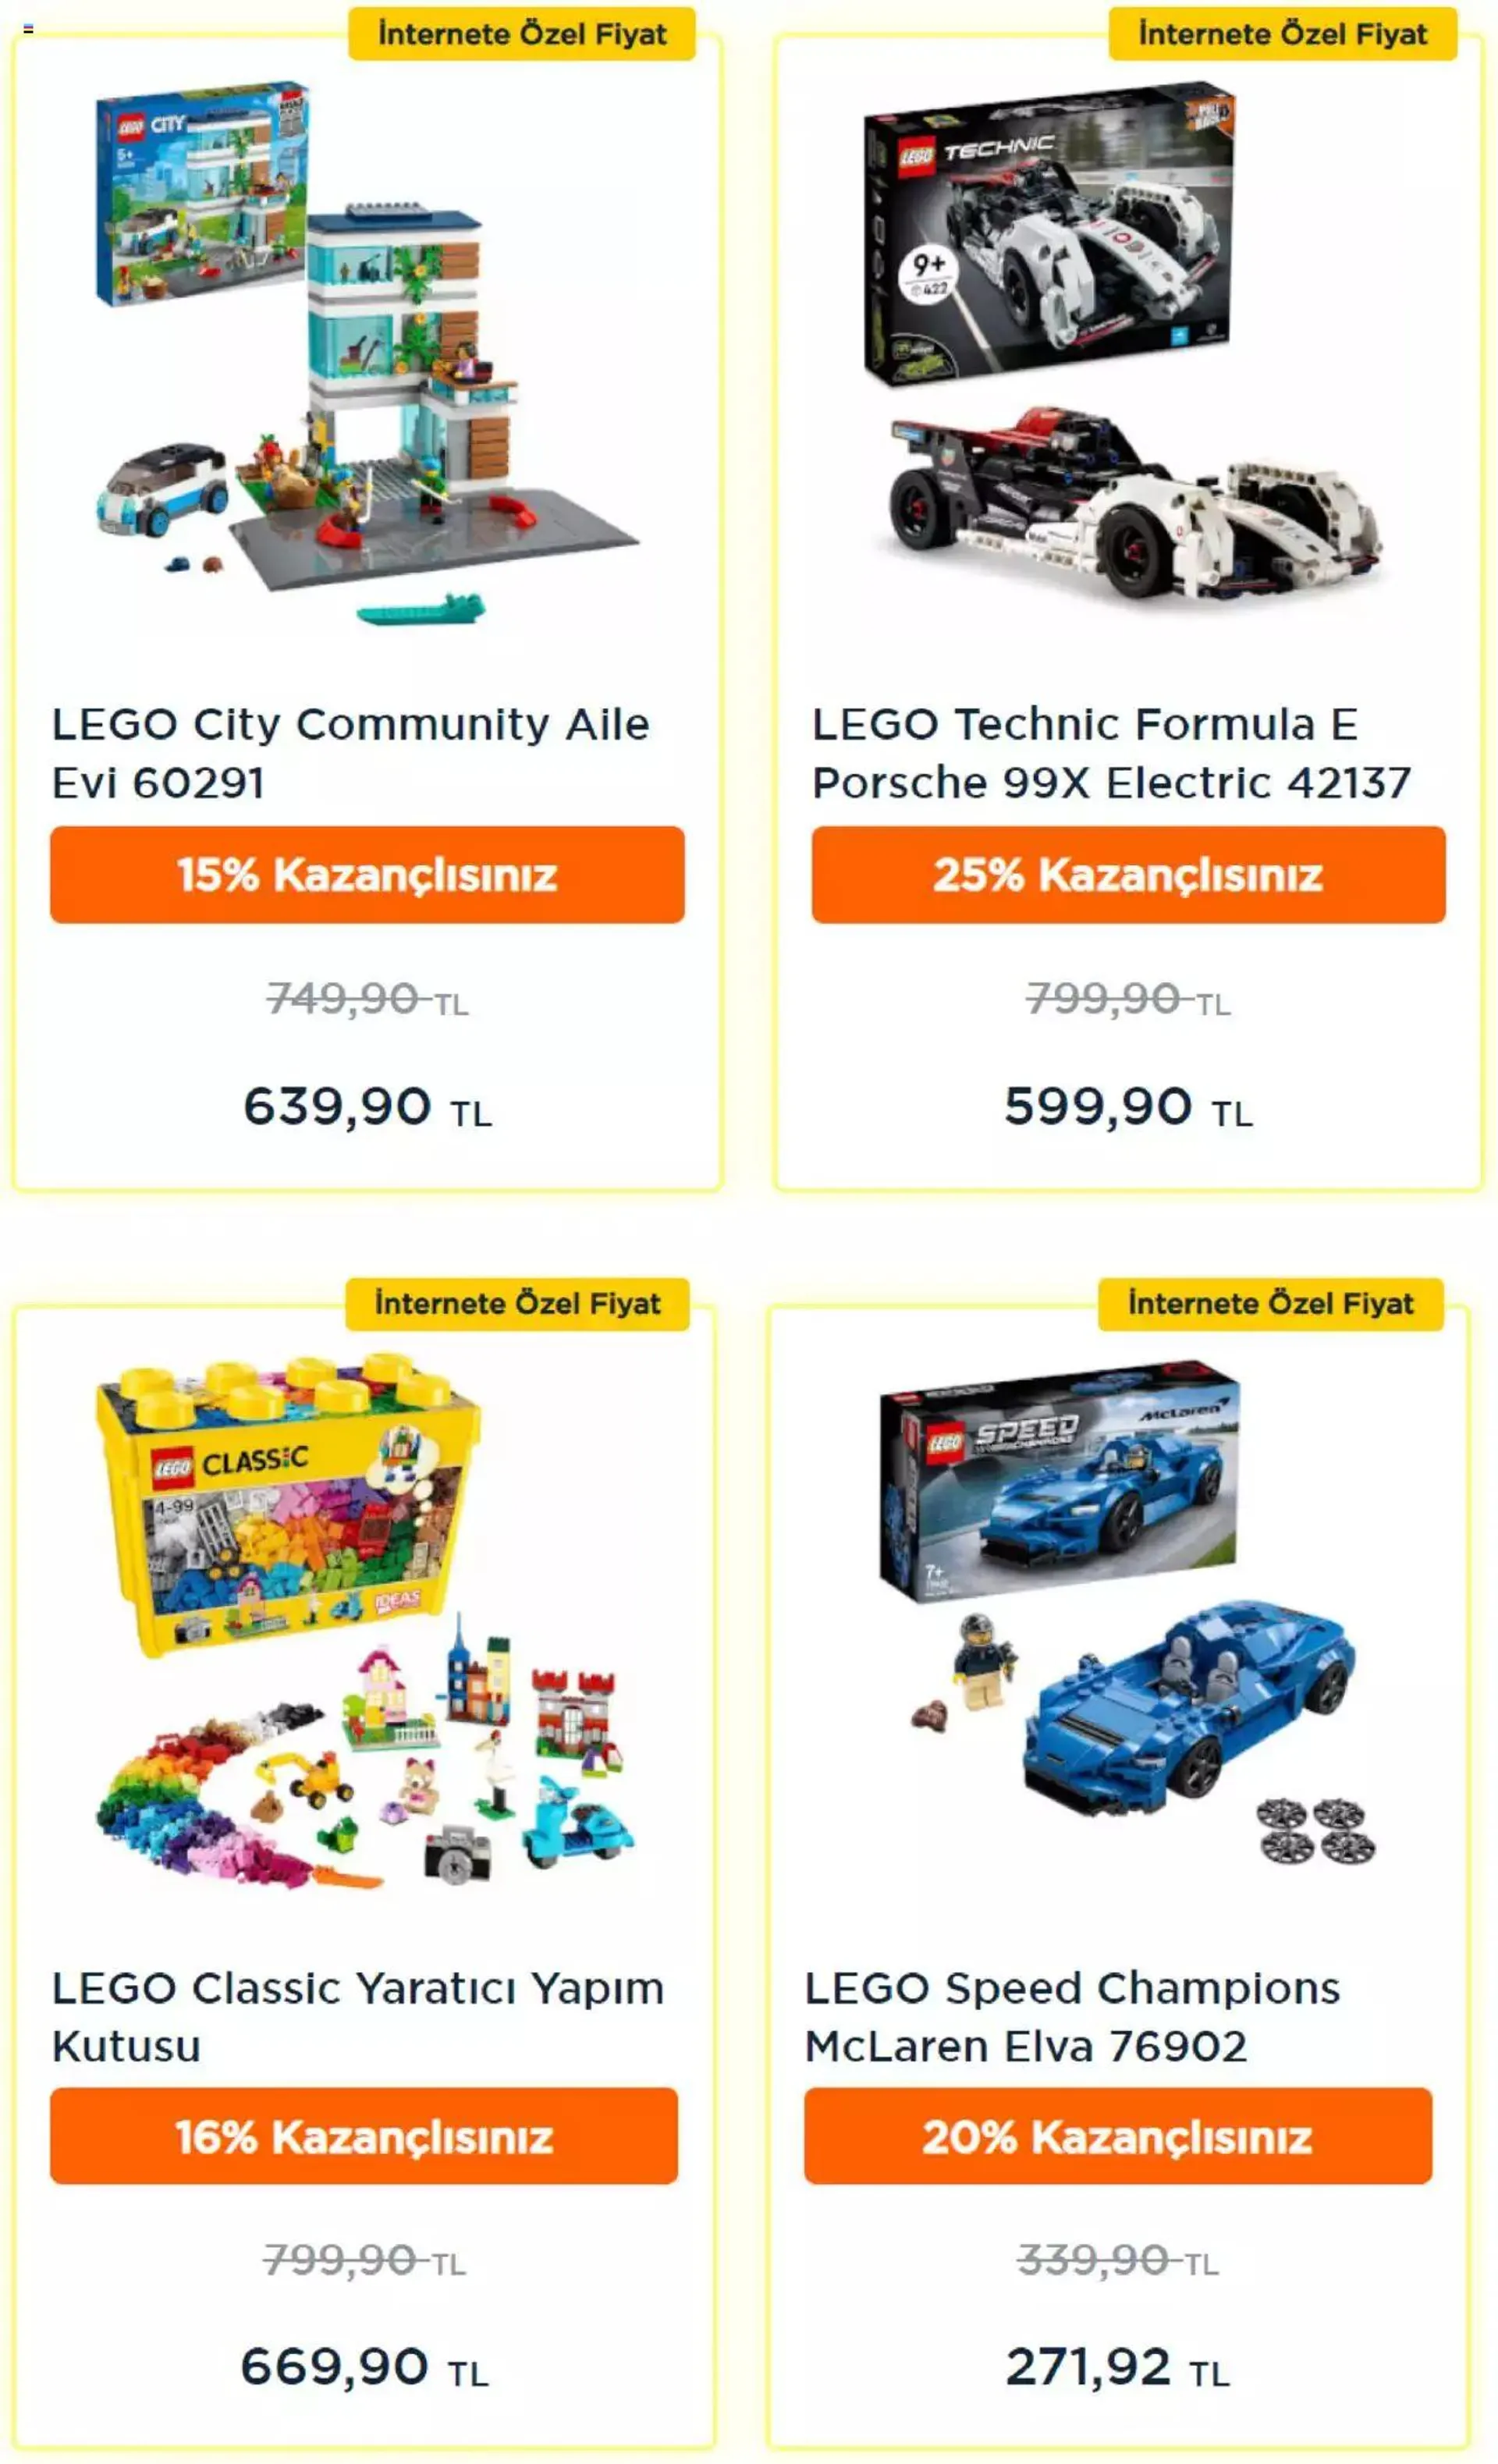 Toyzz Shop - Katalog Lego - 1